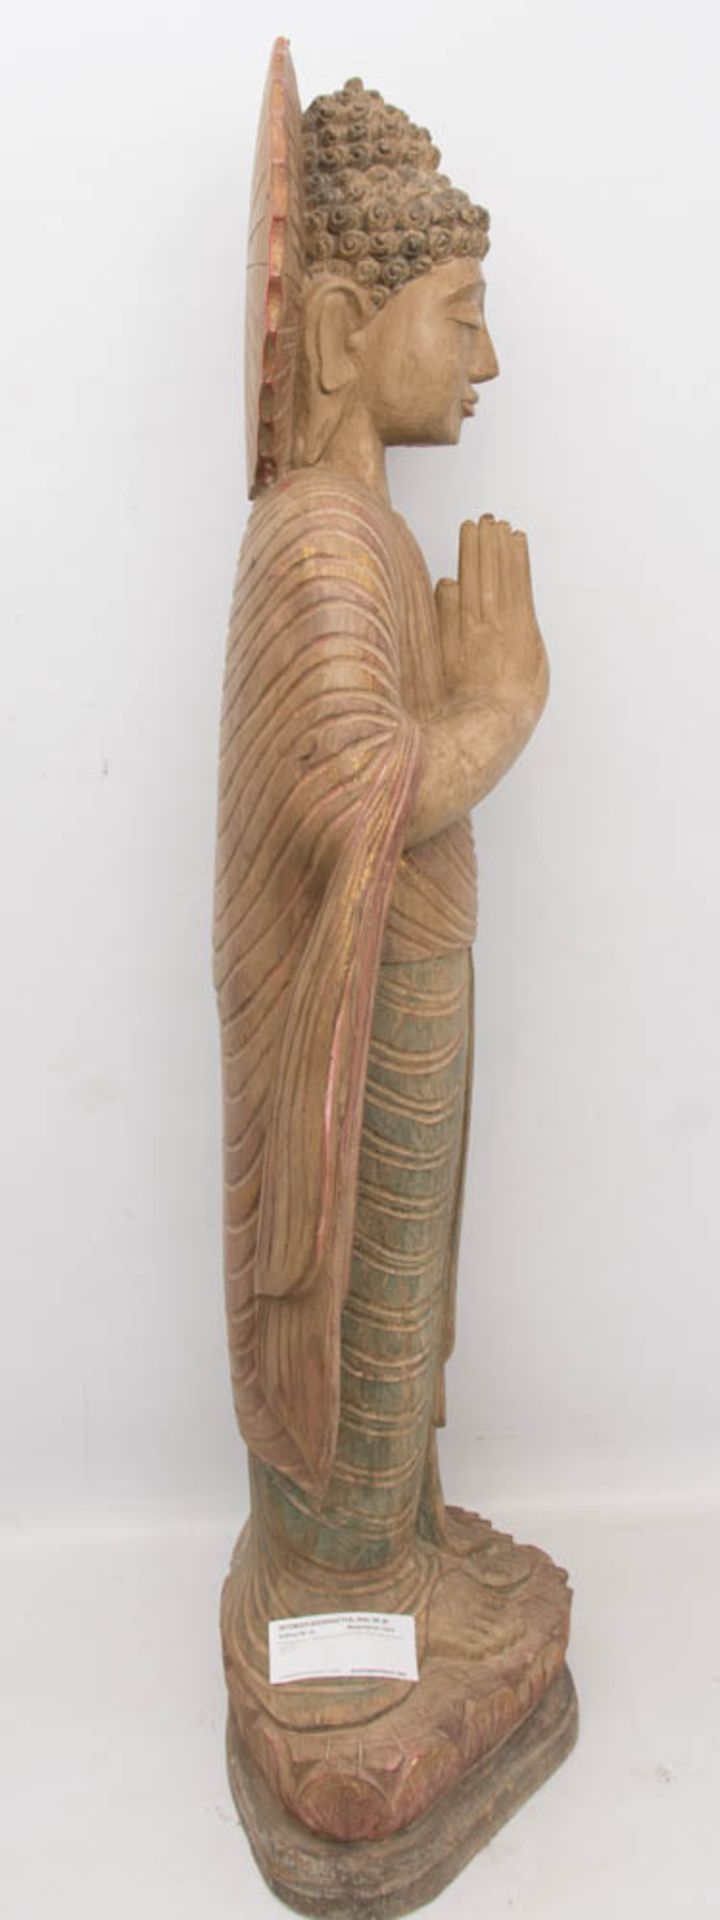 THAILÄNDISCHE BUDDHA STATUE, Holz, 20. Jh.Betende Skulptur in sehr gutem Zustand auf Sockel stehend. - Bild 3 aus 6